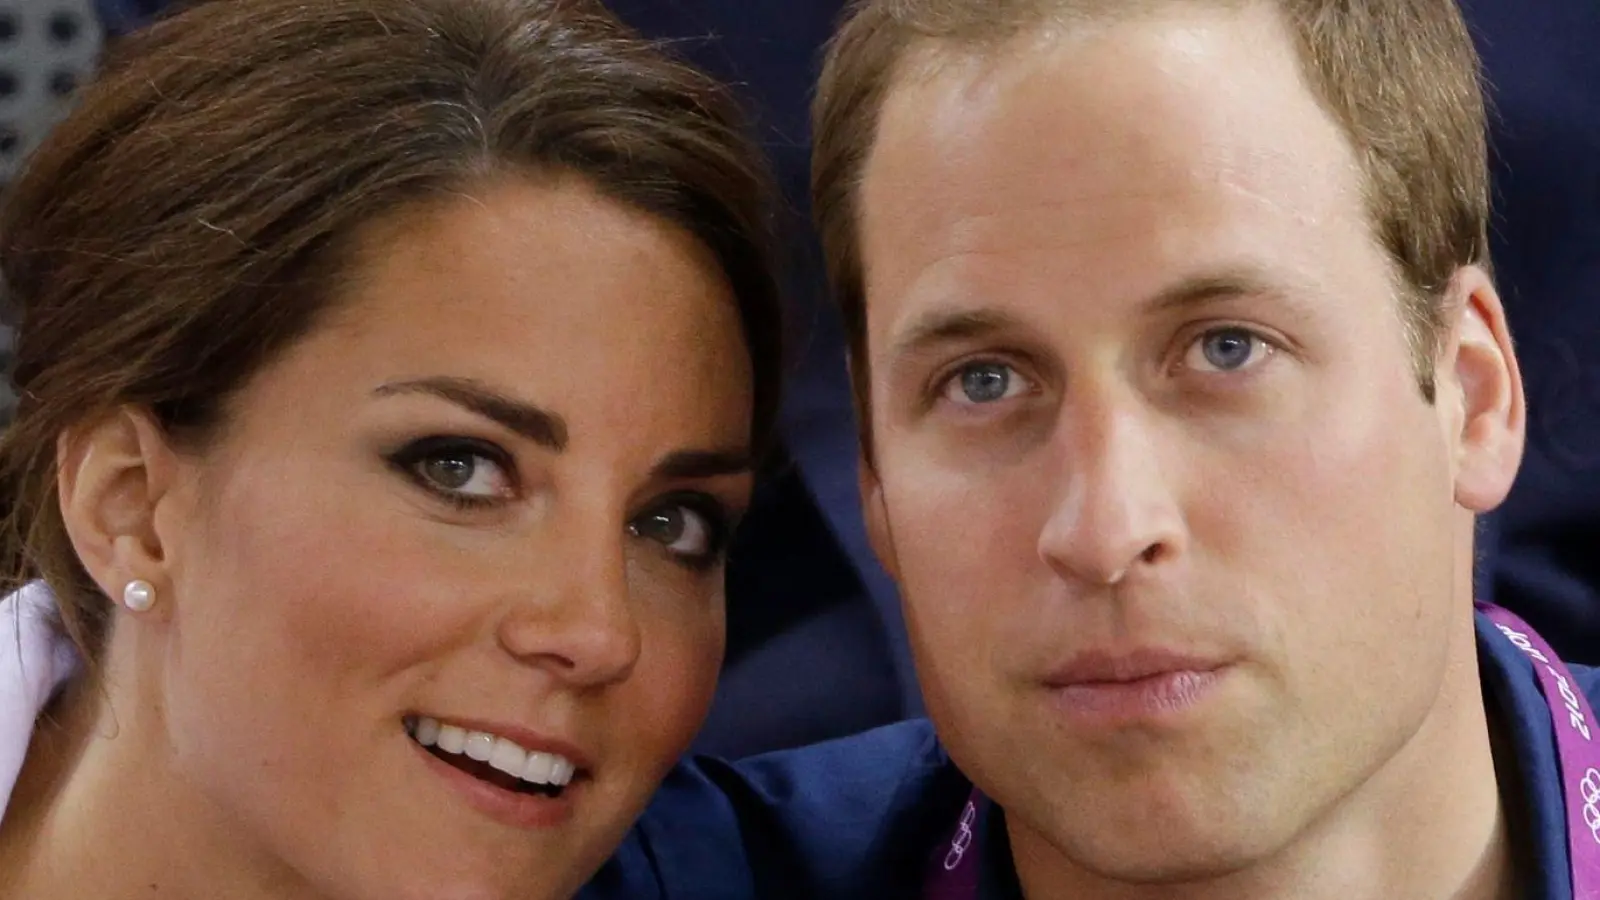 Kate, Prinzessin von Wales, und William, Prinz von Wales, bei den Olympischen Sommerspielen. Die Ehefrau des britischen Thronfolgers bekommt Chemotherapie, wie sie in einer Videobotschaft sagte. (Foto: Matt Rourke/AP/dpa)